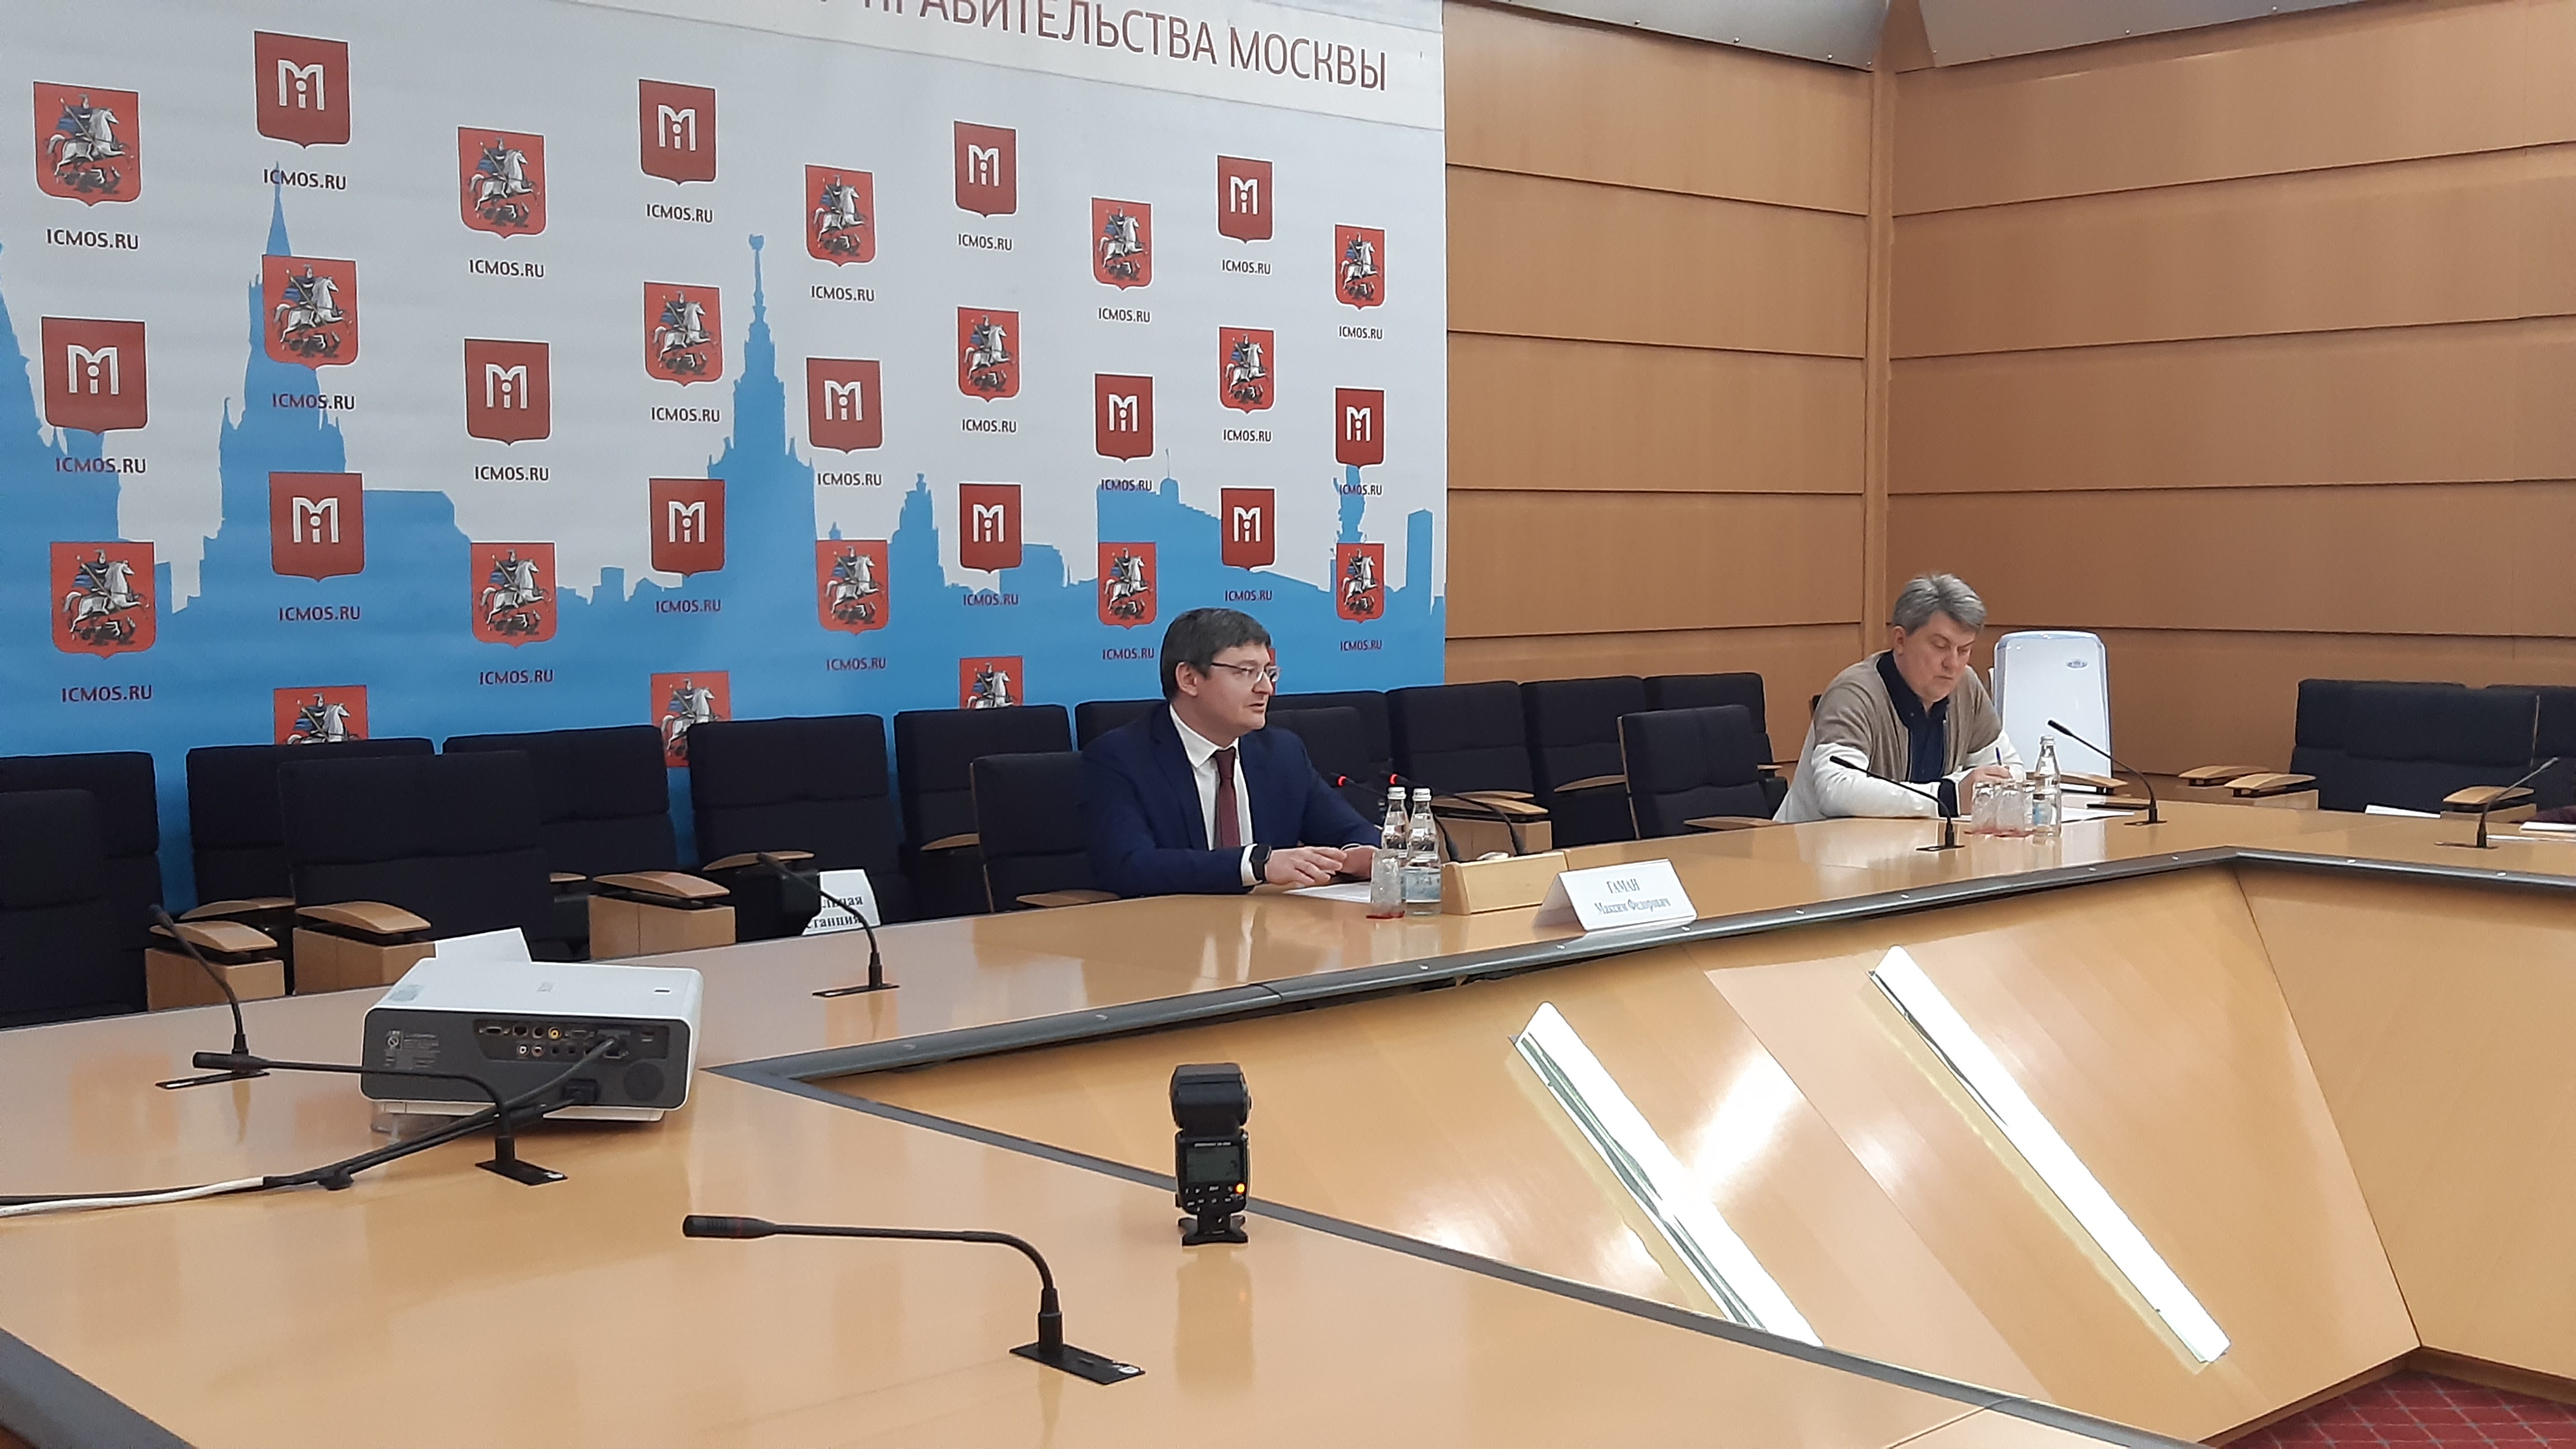 Пресс-конференцию об итогах проведения городской имущественной политики в 2020 году провели в Правительстве Москвы. Фото: Дарья Бруданова